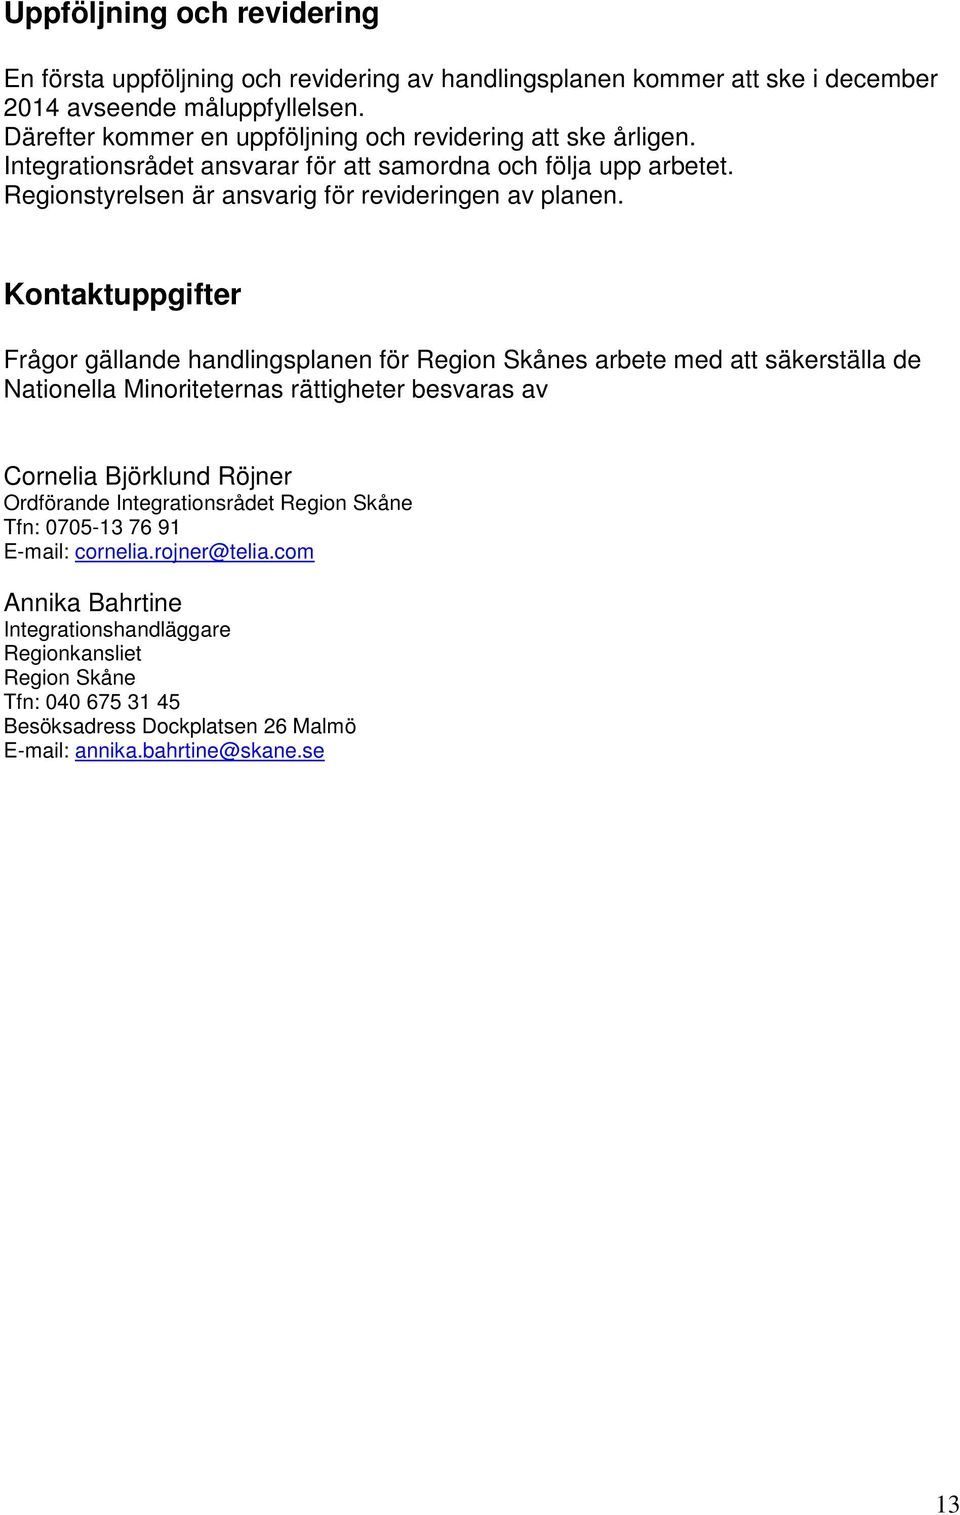 Kontaktuppgifter Frågor gällande handlingsplanen för Region Skånes arbete med att säkerställa de Nationella Minoriteternas rättigheter besvaras av Cornelia Björklund Röjner Ordförande